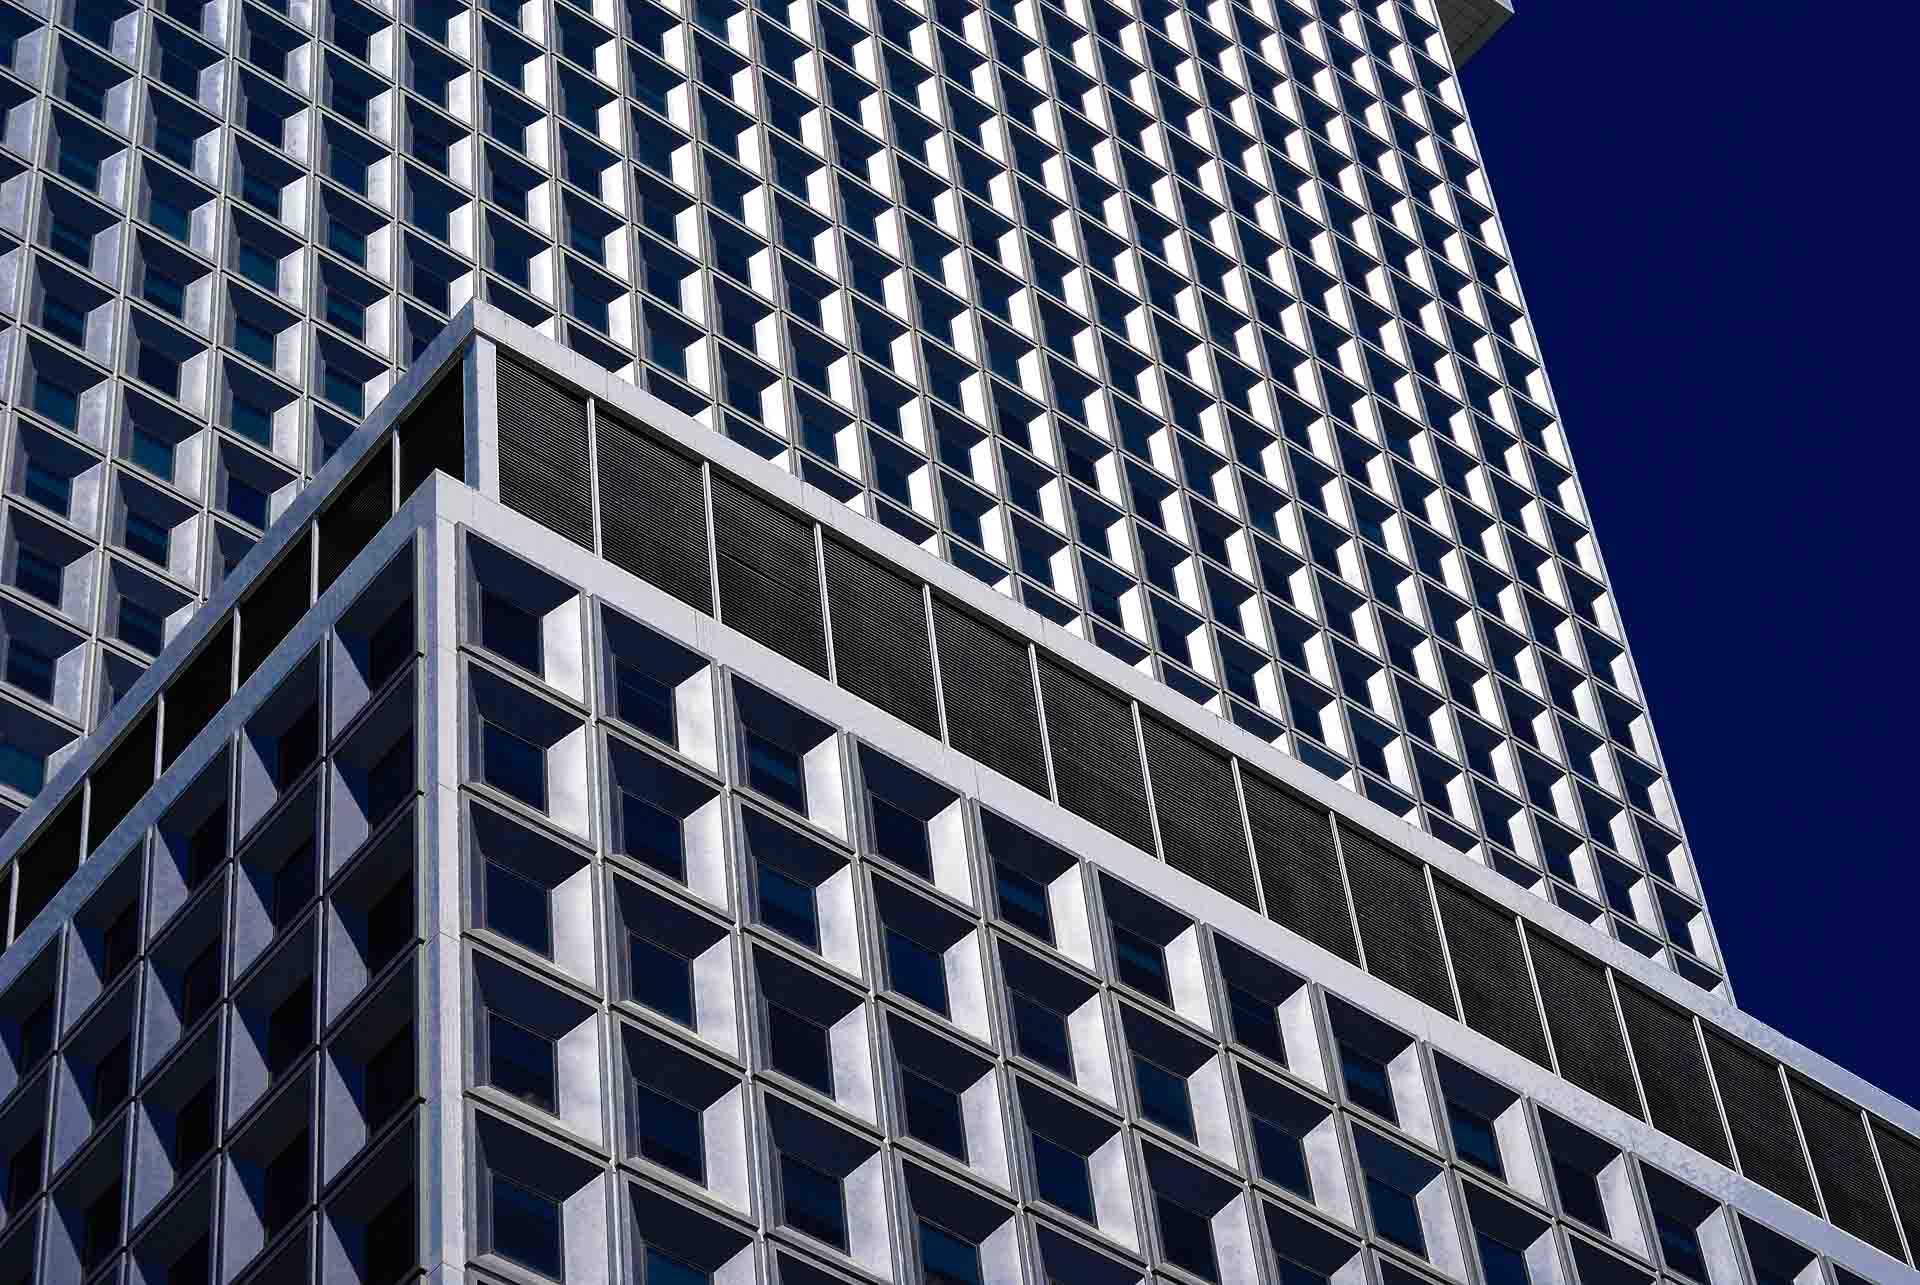 repetitive square windows on a new york city skyscraper